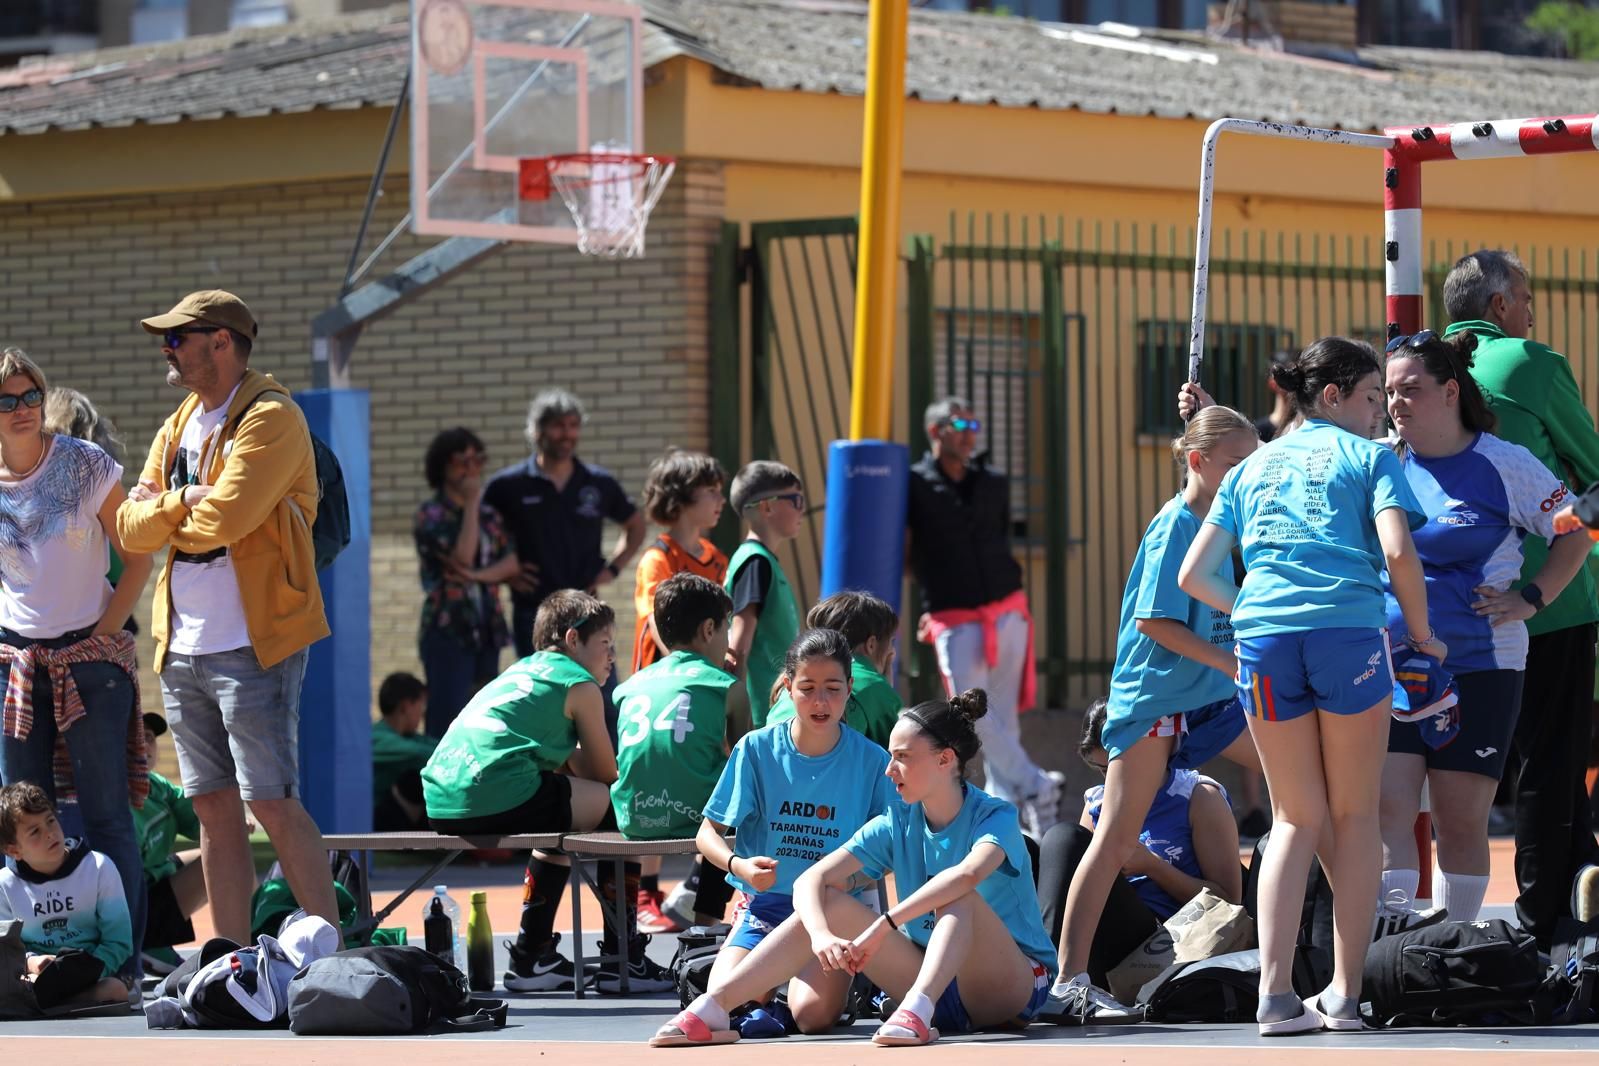 En imágenes | El XXI torneo de baloncesto Doctor Azúa congrega a 1.200 participantes